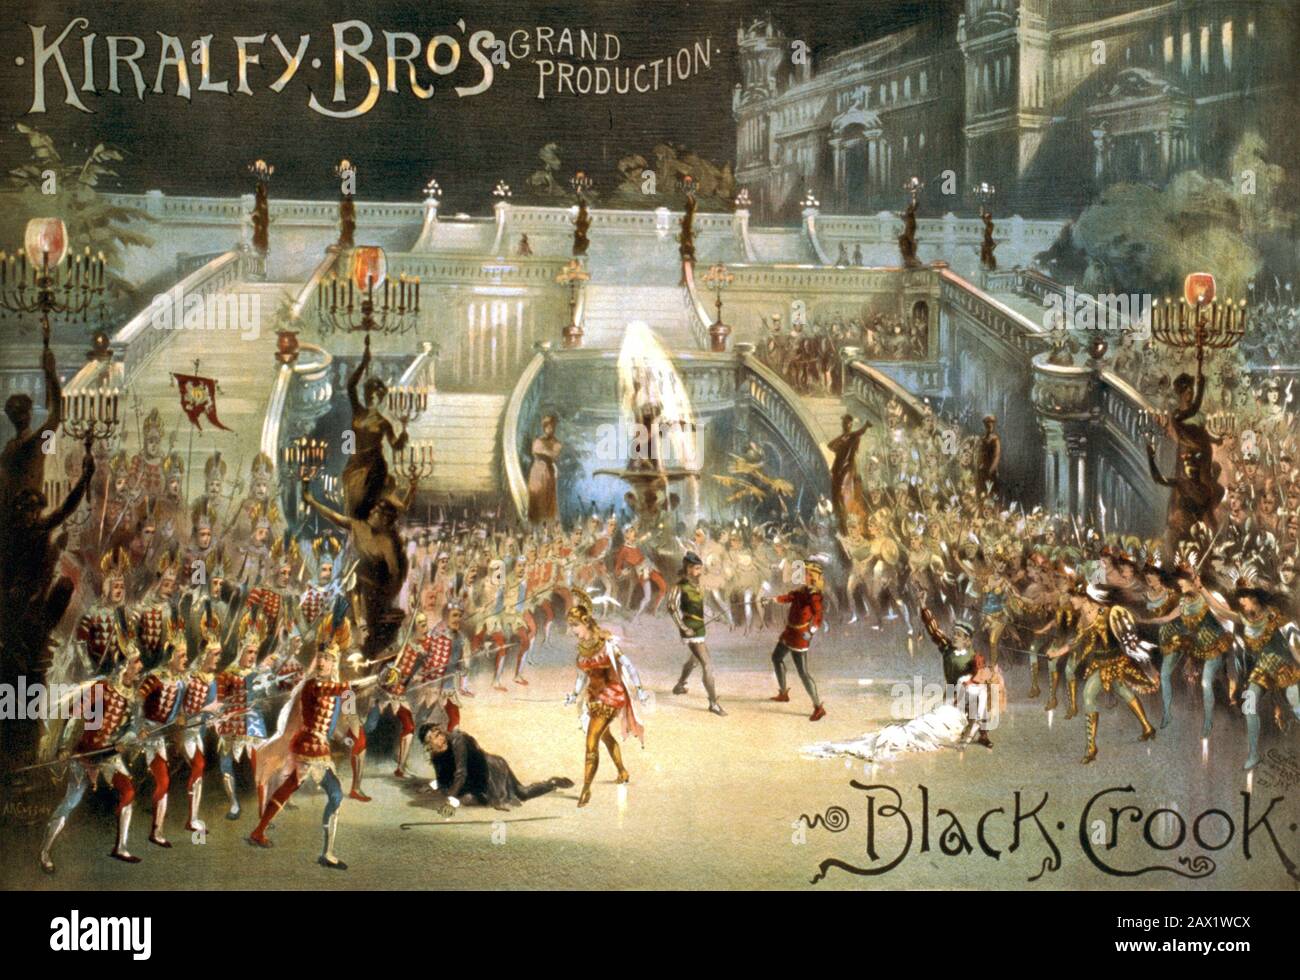 Affiche publicitaire Kiralfy Bros production de Black Crook, vers 1870 Banque D'Images